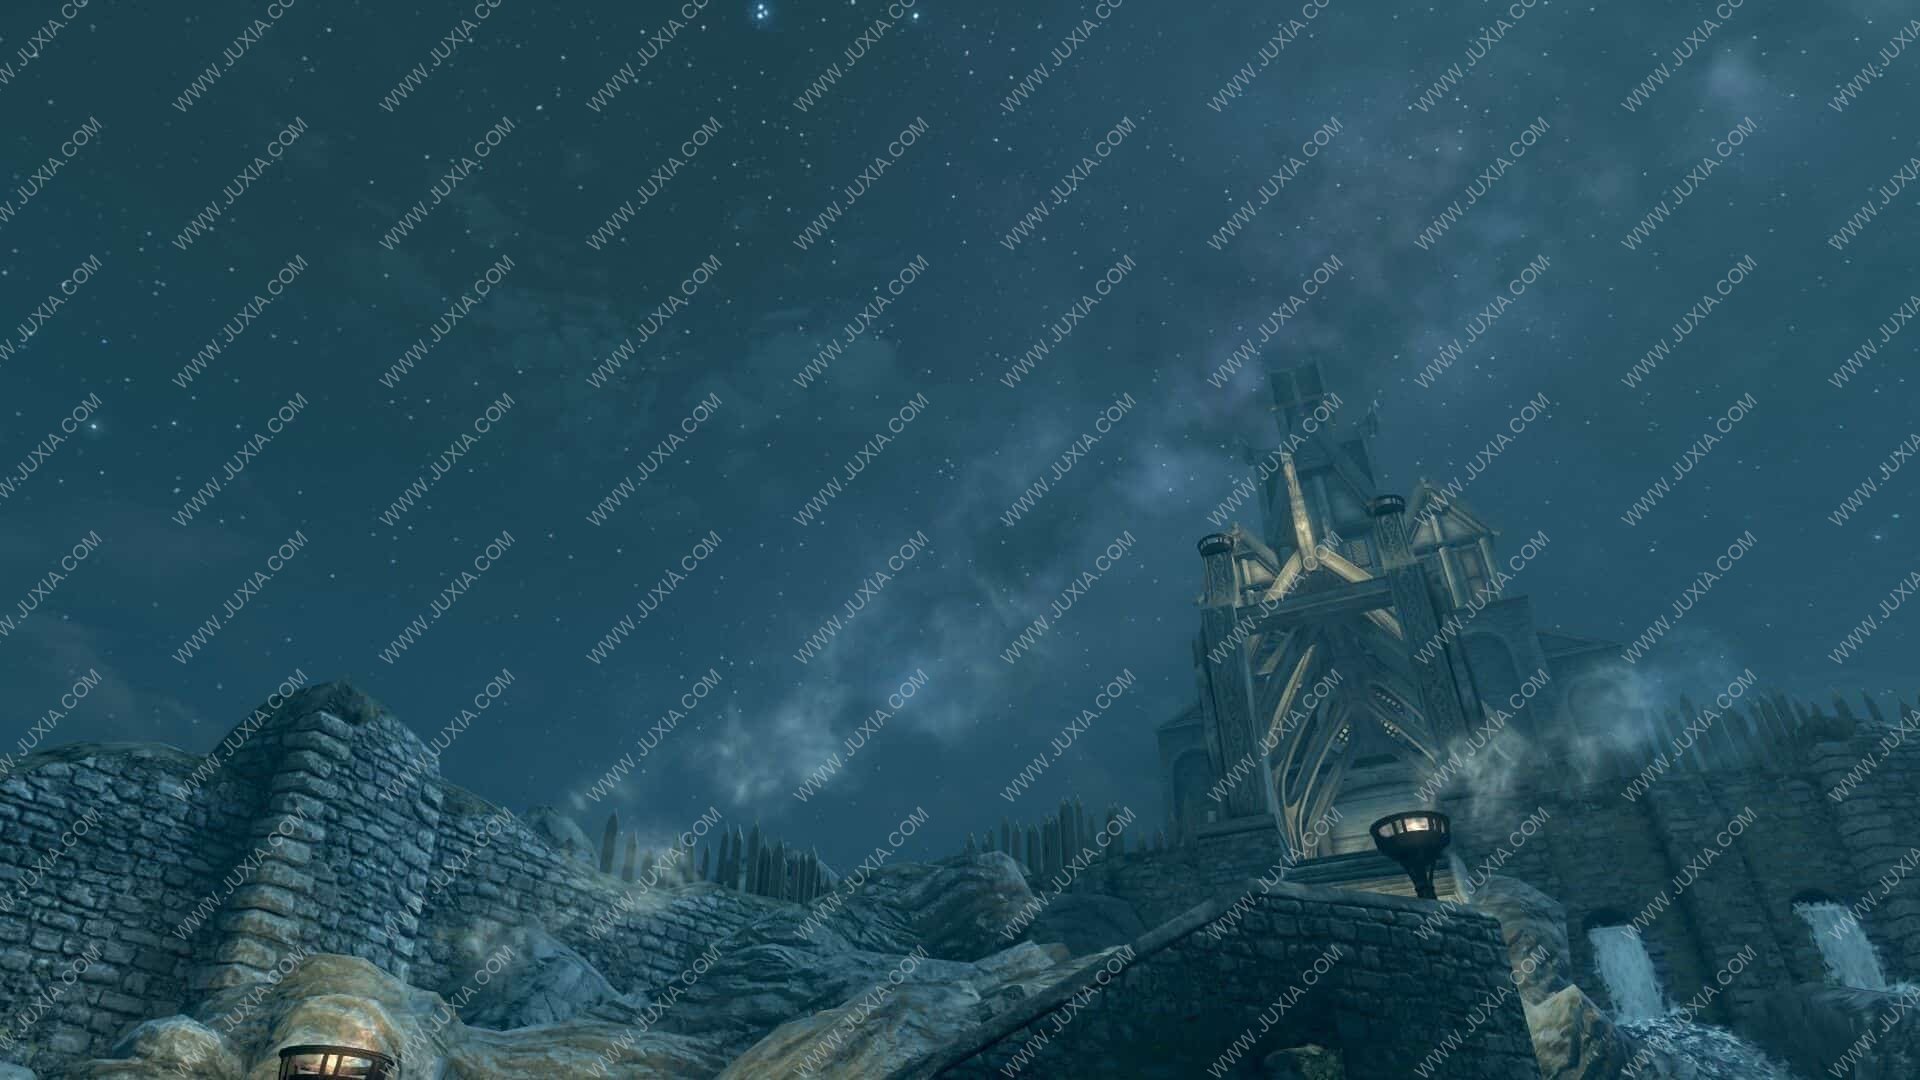 从星空中看虚拟游戏与现实世界的边界 荒野大镖客2巫师3等游戏的灿烂星空